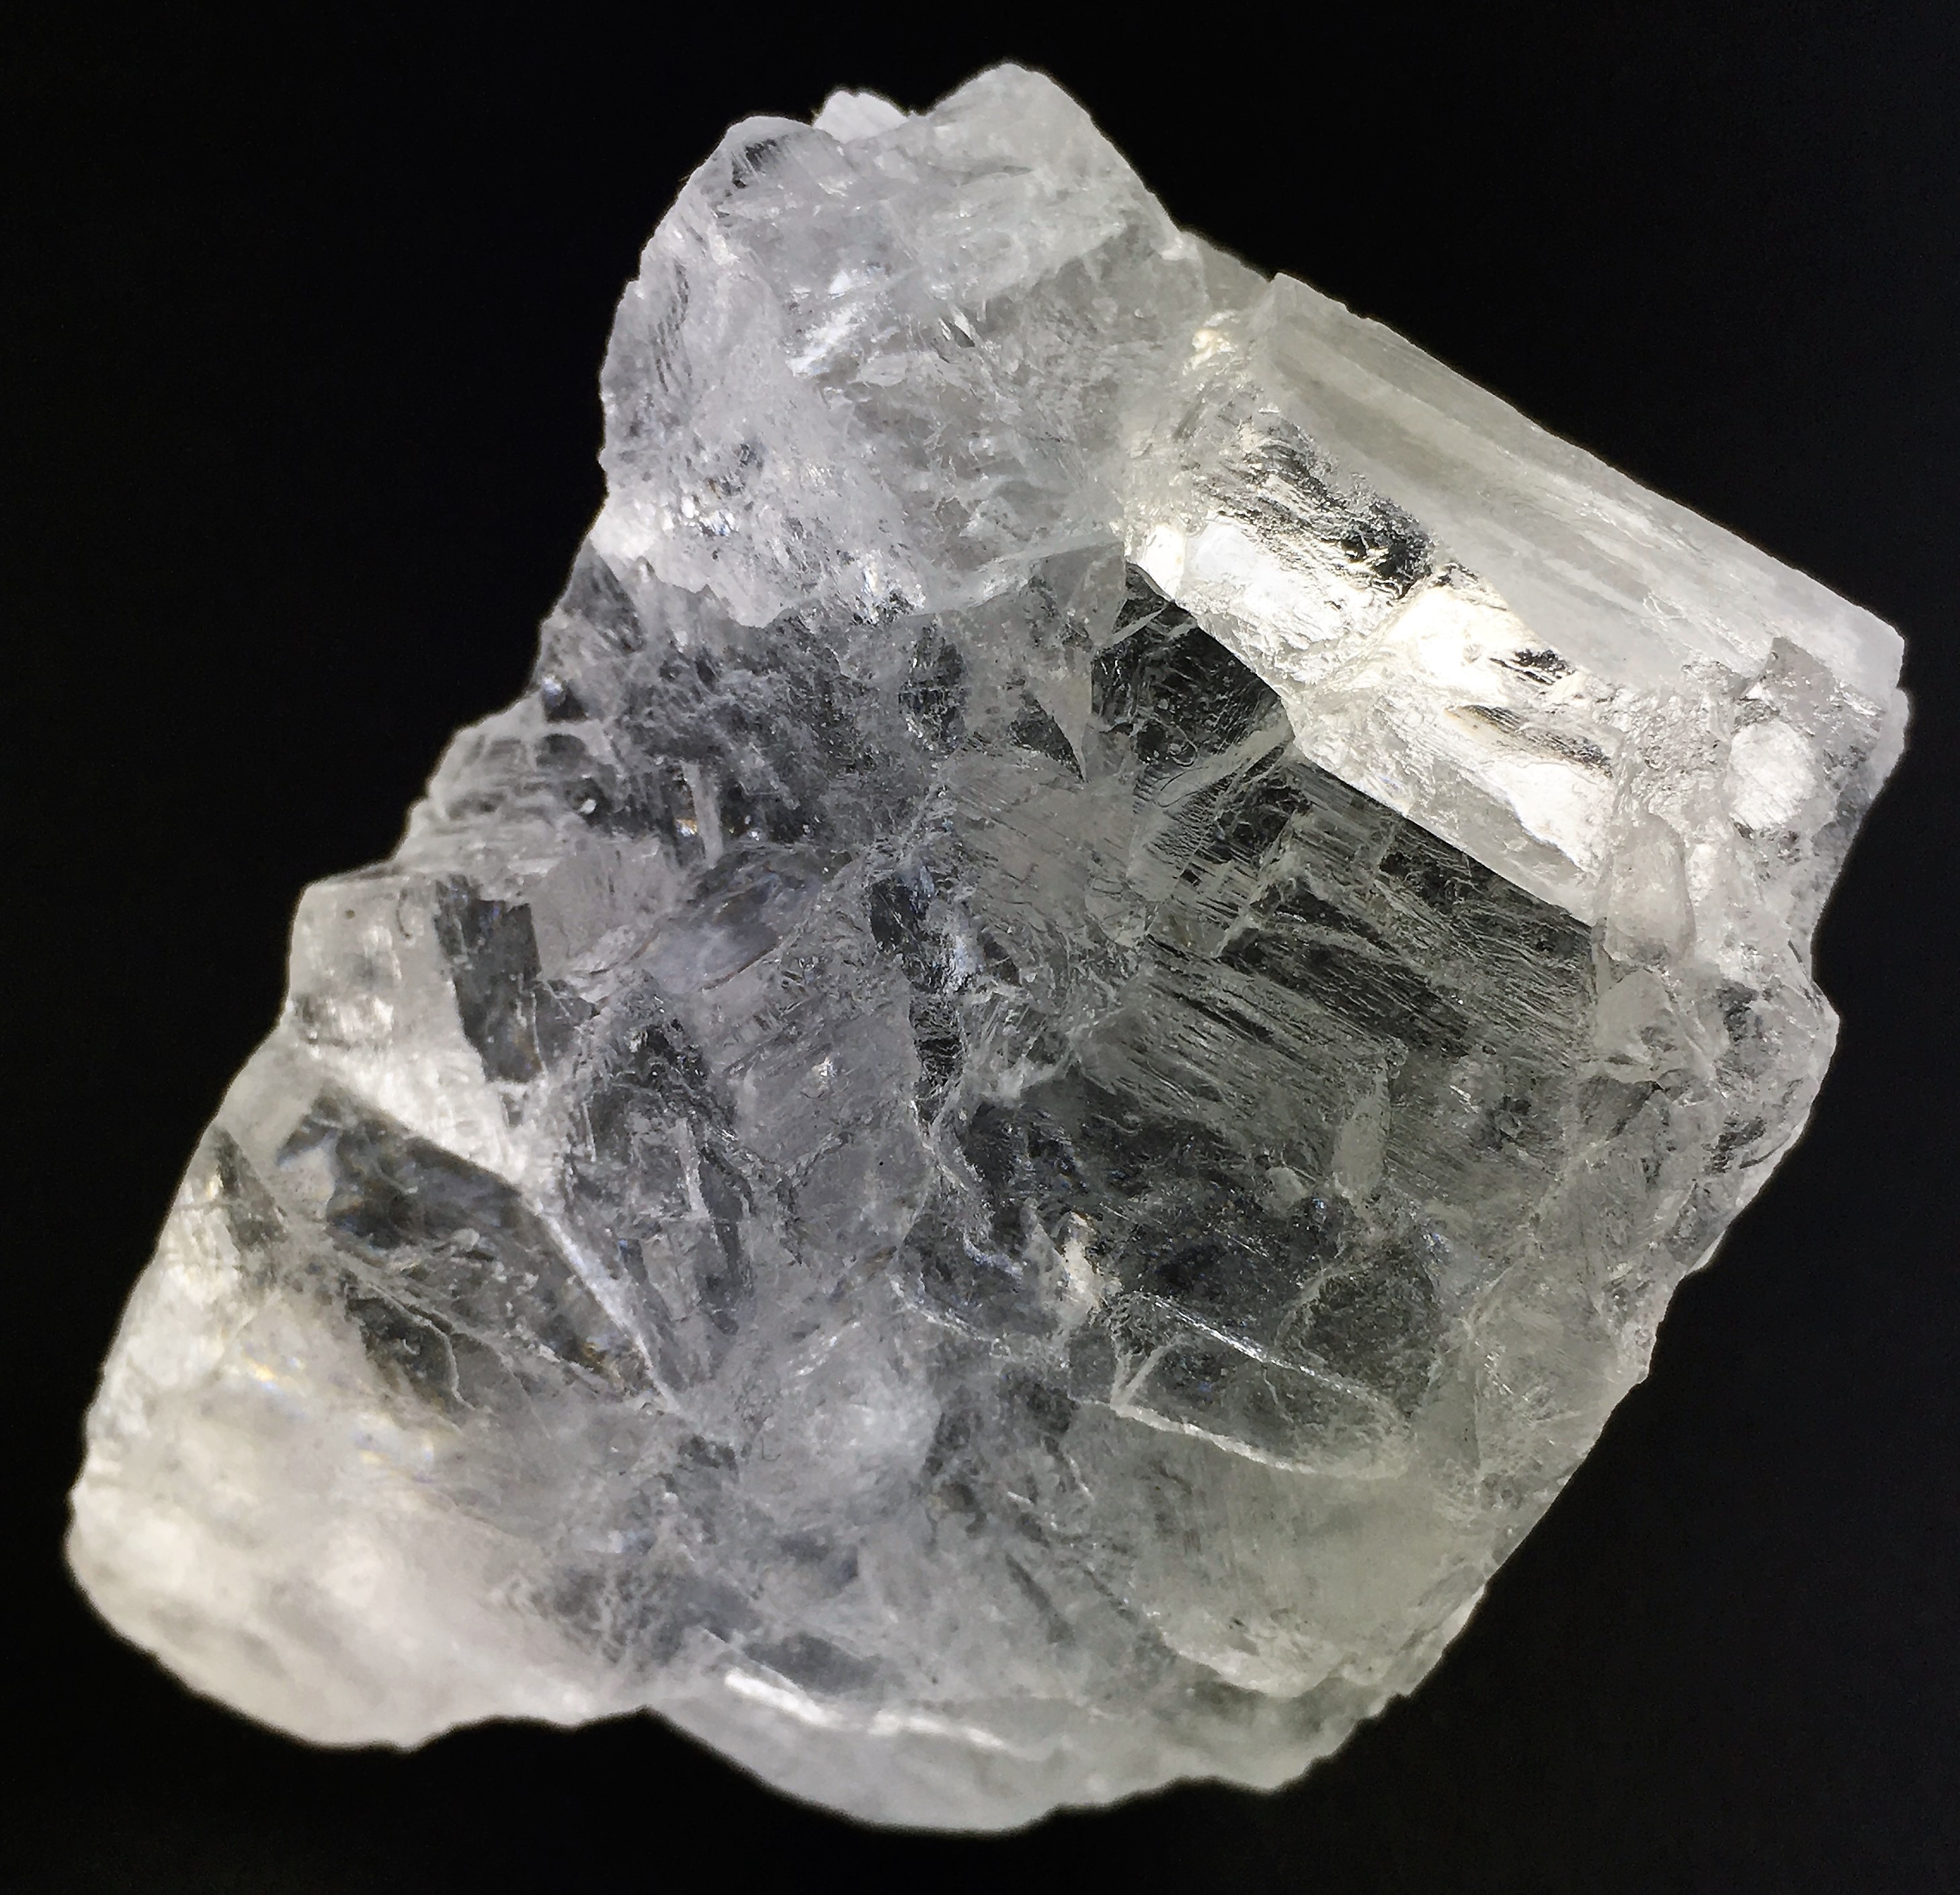 https://mineralevivo.b-cdn.net/1193/minerali-halite-stupendo-cristallo-da-collezione-grezza-cristalli-di-sale.jpg?ps_cache=208